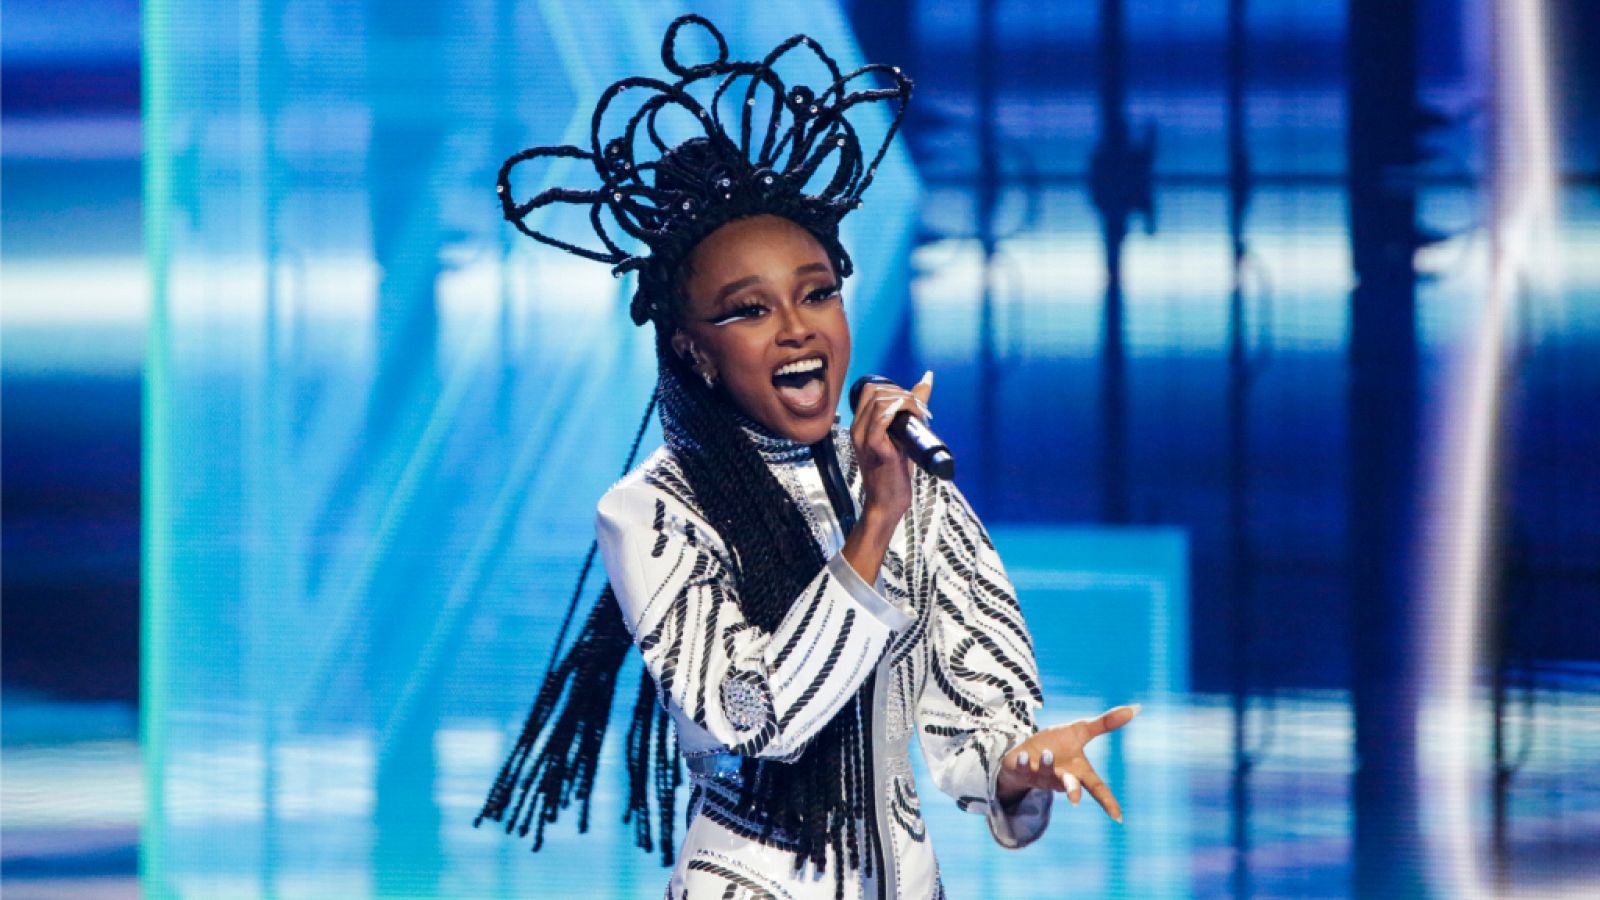 Eurovisión 2021: Israel canta "Set me free" en la final